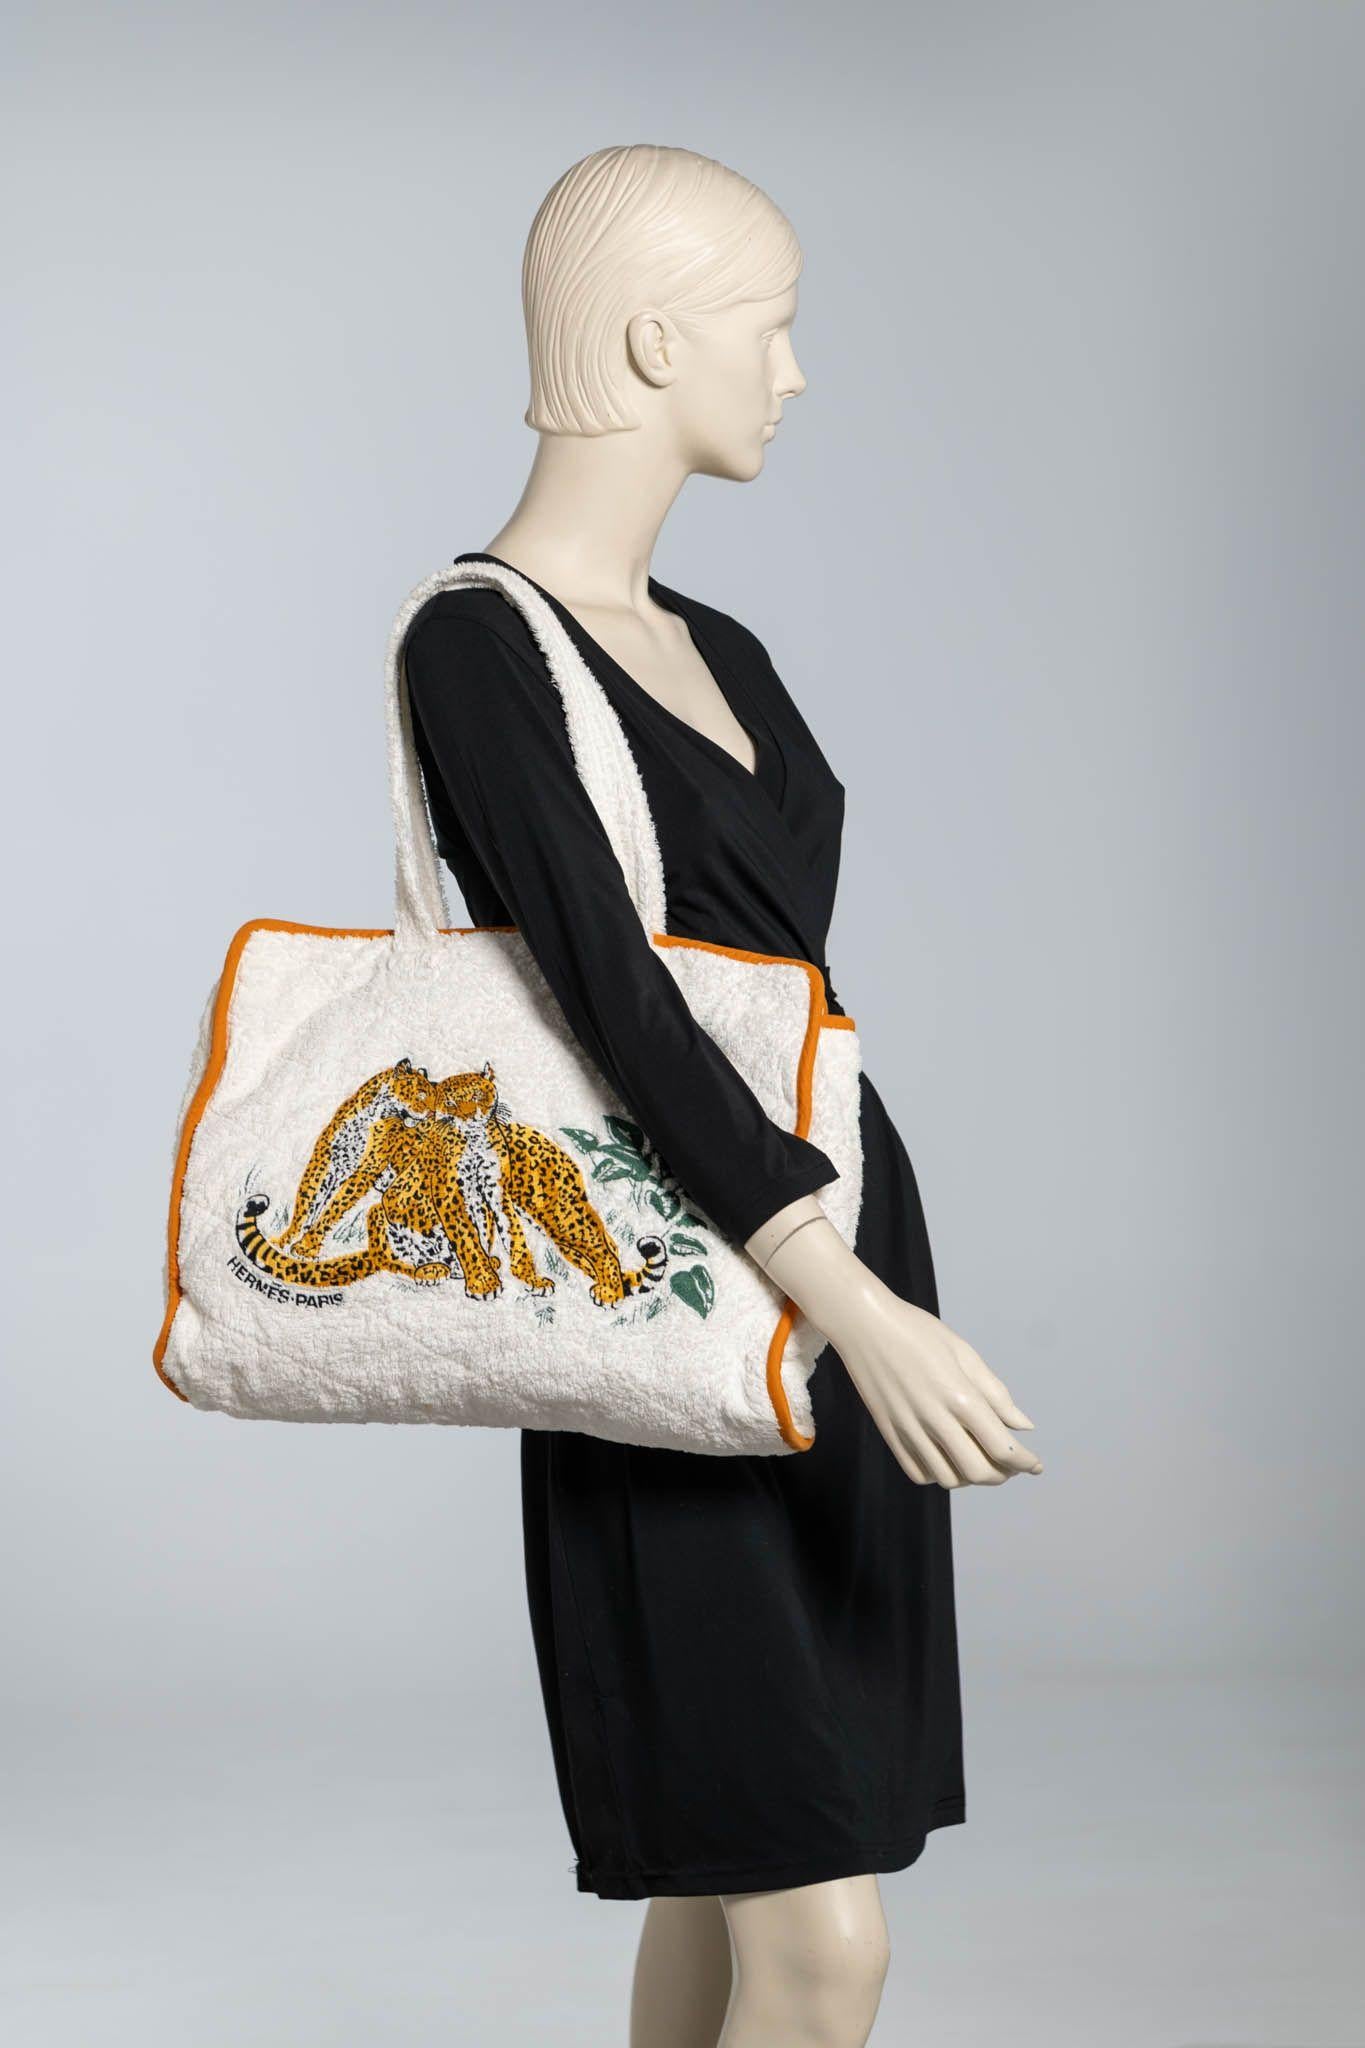 Hermès vintage collectible brach set with famous 